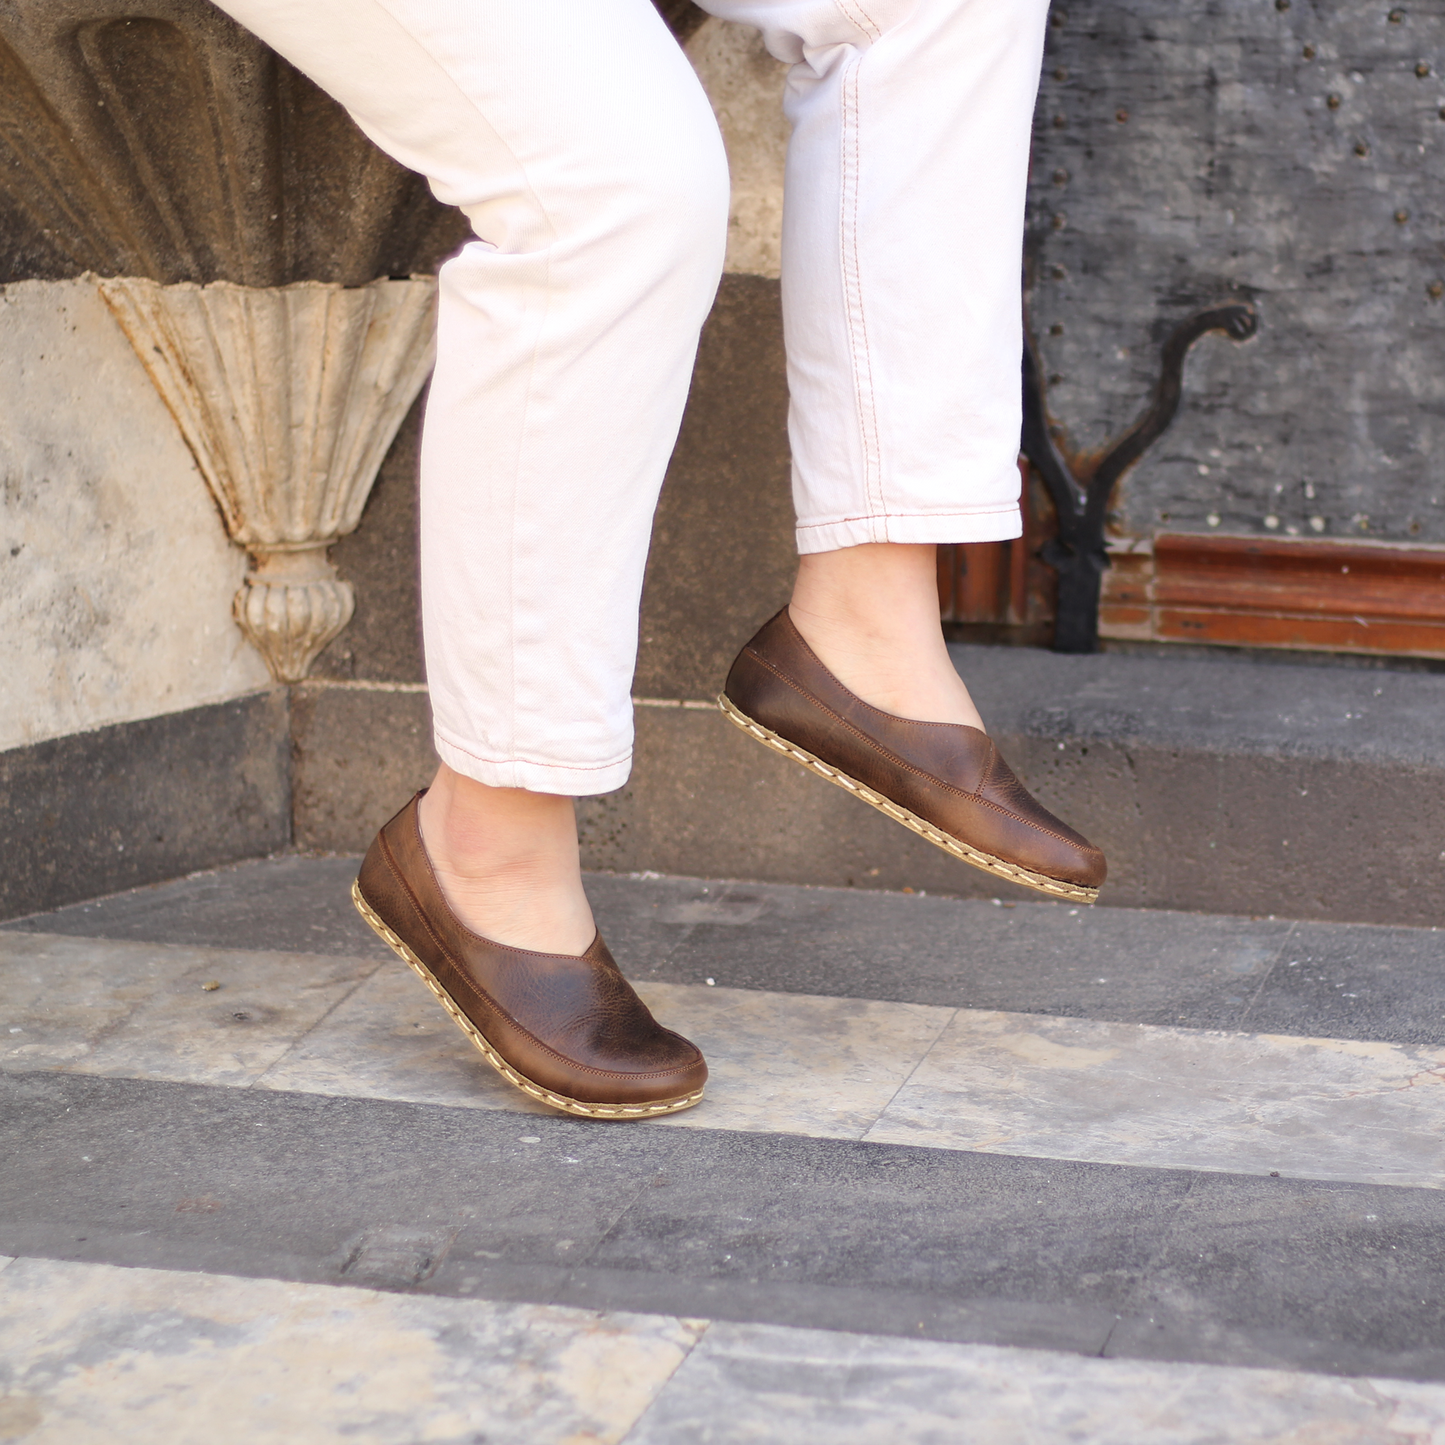 Women's Handmade Zero Drop Barefoot Classic Crazy Brown Loafers